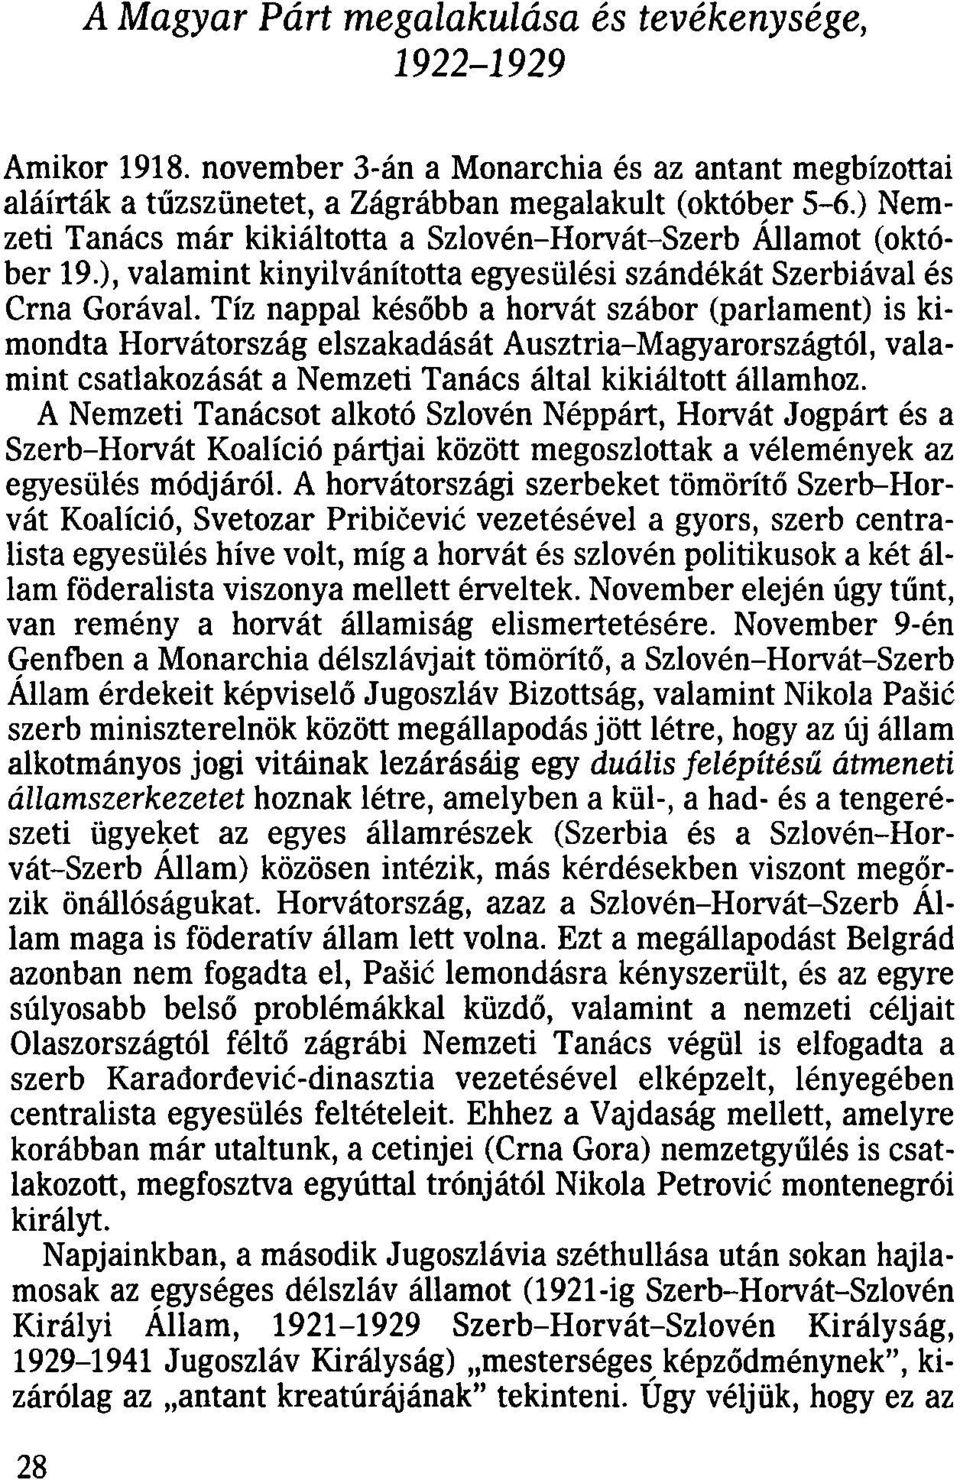 Tíz nappal később a horvát szábor (parlament) is kimondta Horvátország elszakadását Ausztria-Magyarországtól, valamint csatlakozását a Nemzeti Tanács által kikiáltott államhoz.